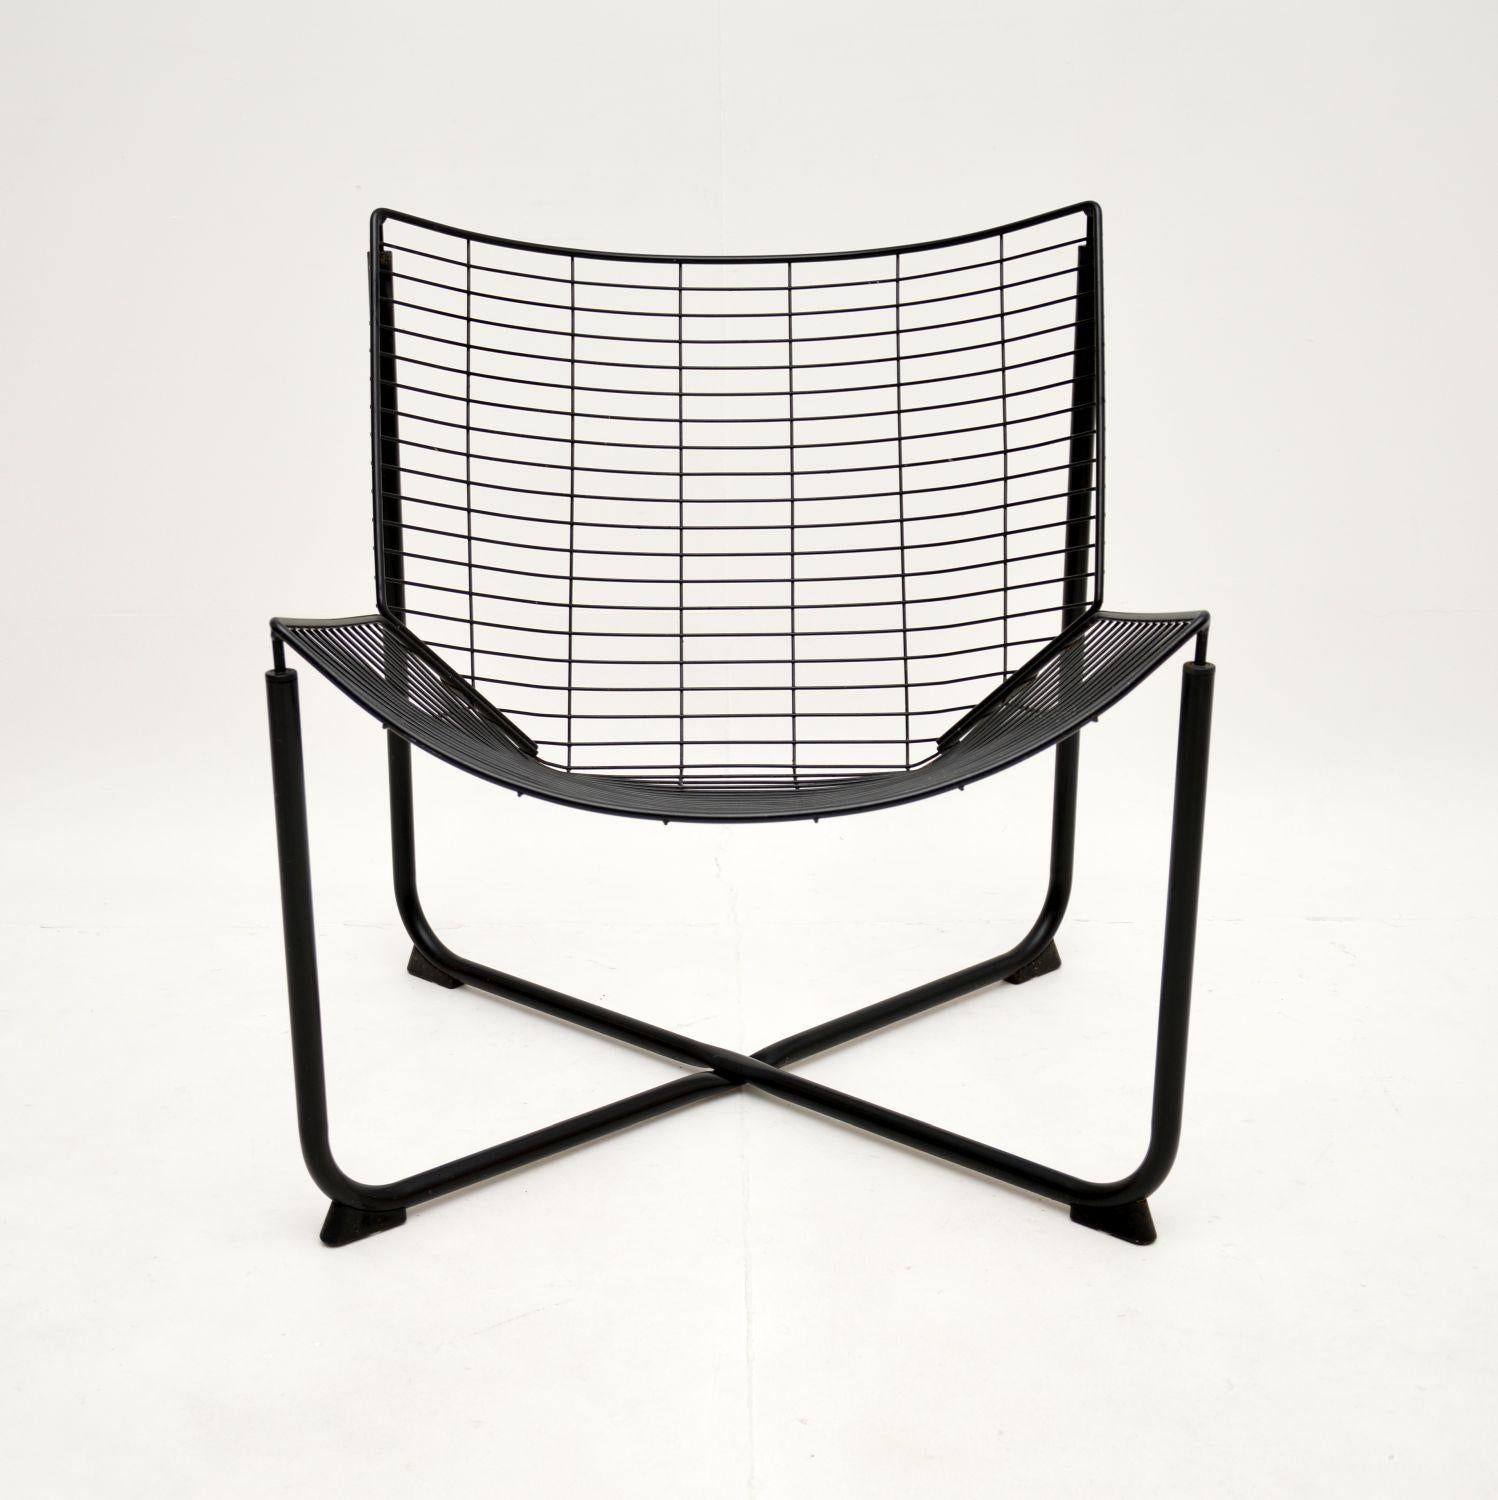 Ein stilvolles und ikonisches Design: der Jarpen-Stuhl aus den 1980er Jahren von Niels Gammelgaard für Ikea.

Er ist von hervorragender Qualität und hat ein schönes Design, das aus allen Blickwinkeln beeindruckend aussieht.

Dies ist in